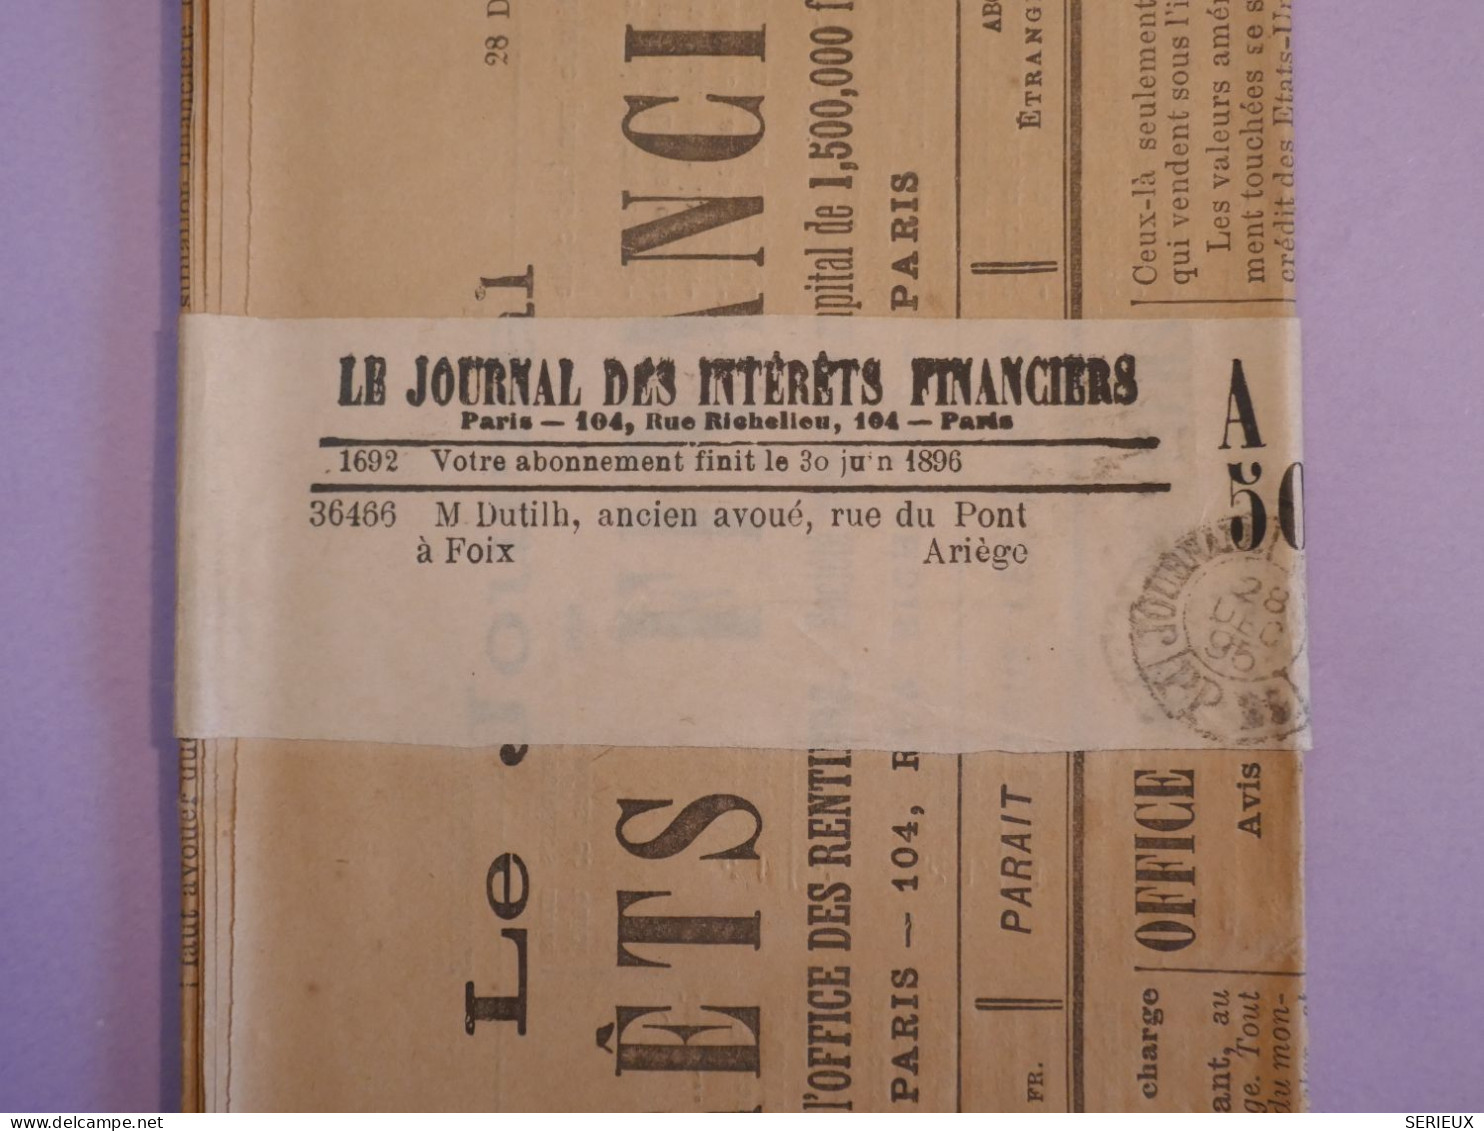 DA7 FRANCE JOURNAL  DES INTERETS FINANCIERS RR 28 DEC. 1895 ++AFFR. INTERESSANT+++ - Journaux